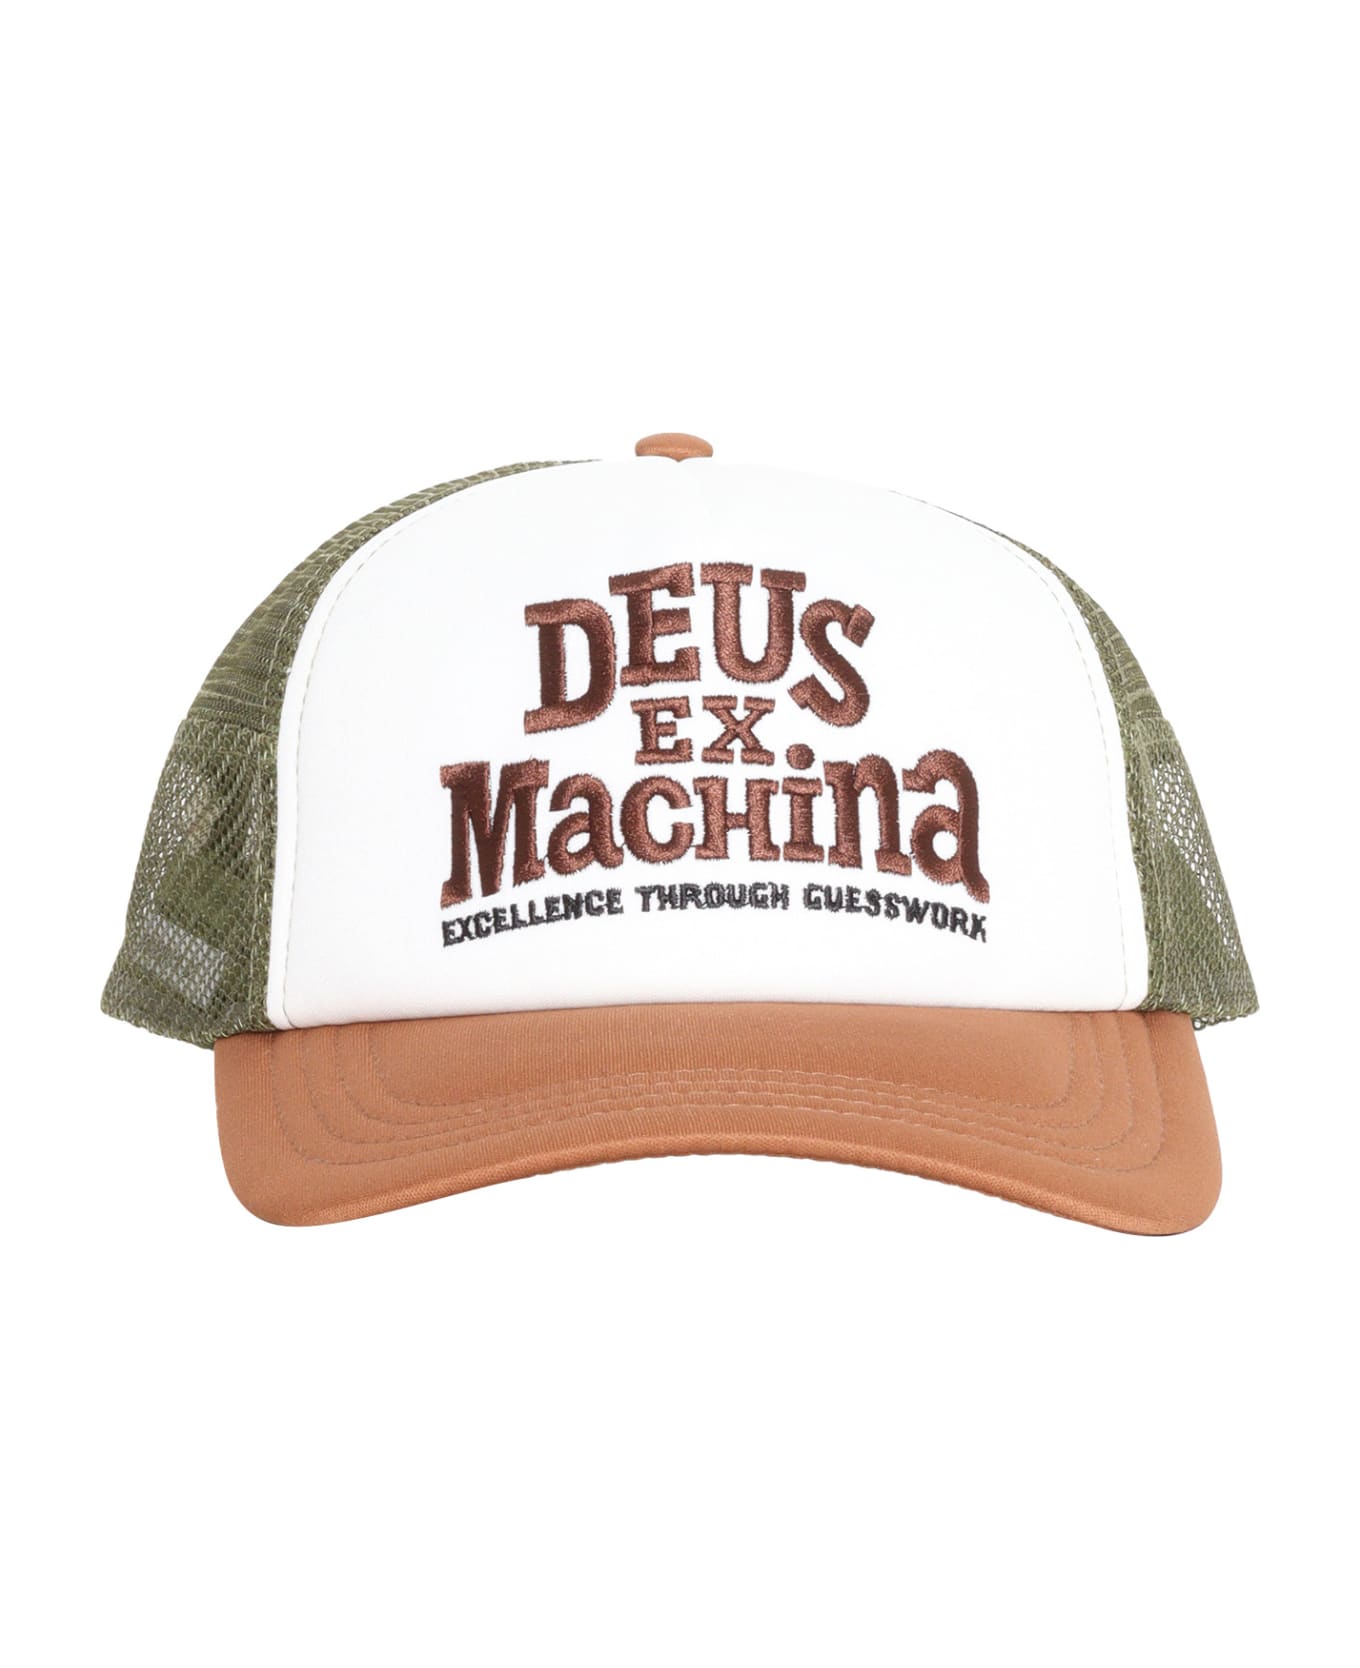 Deus Ex Machina Brown Baylands Trucker Cap - BROWN